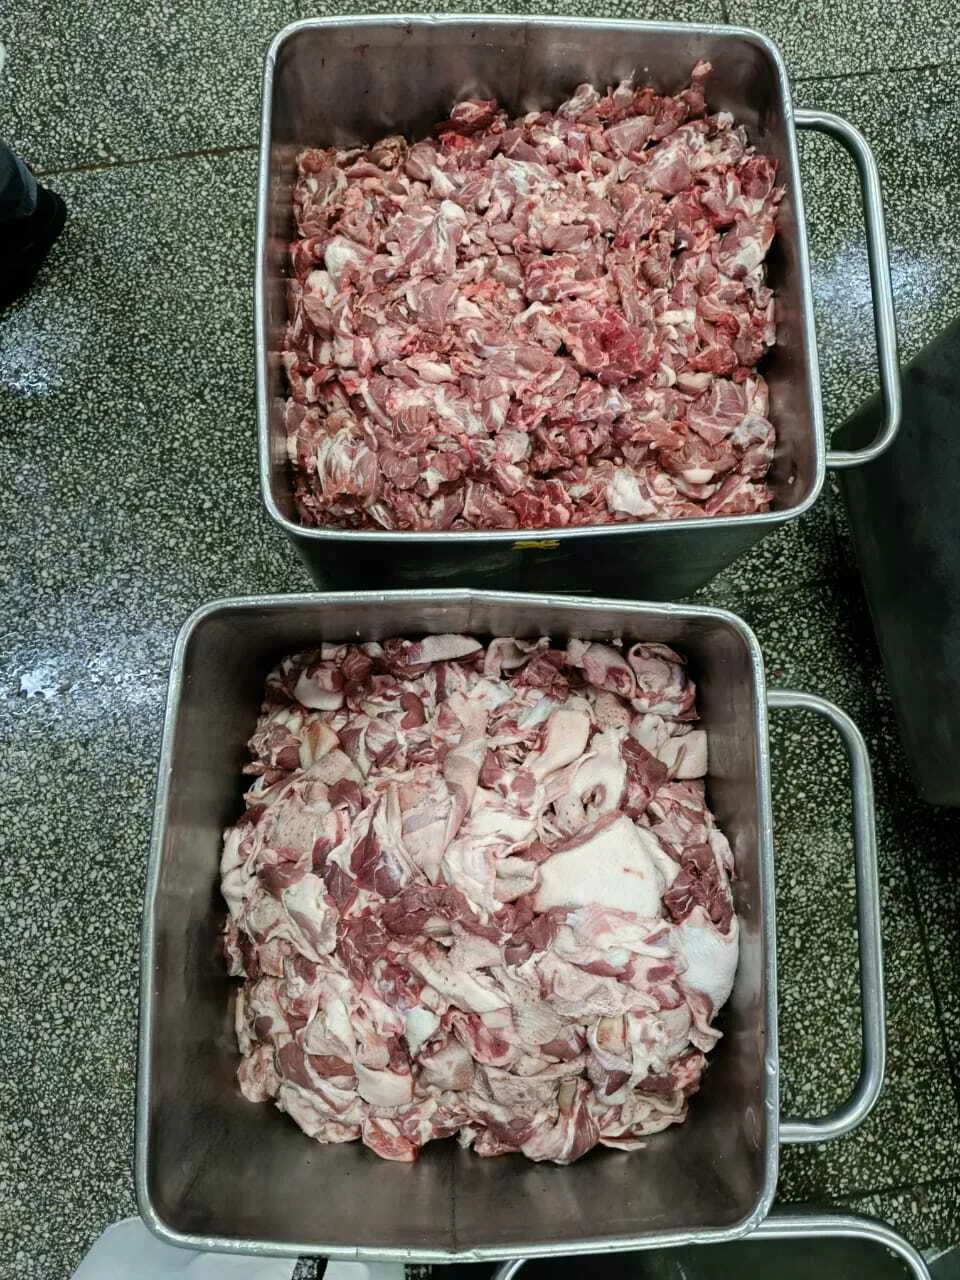 мясо свиных голов (фарш) в Краснодаре и Краснодарском крае